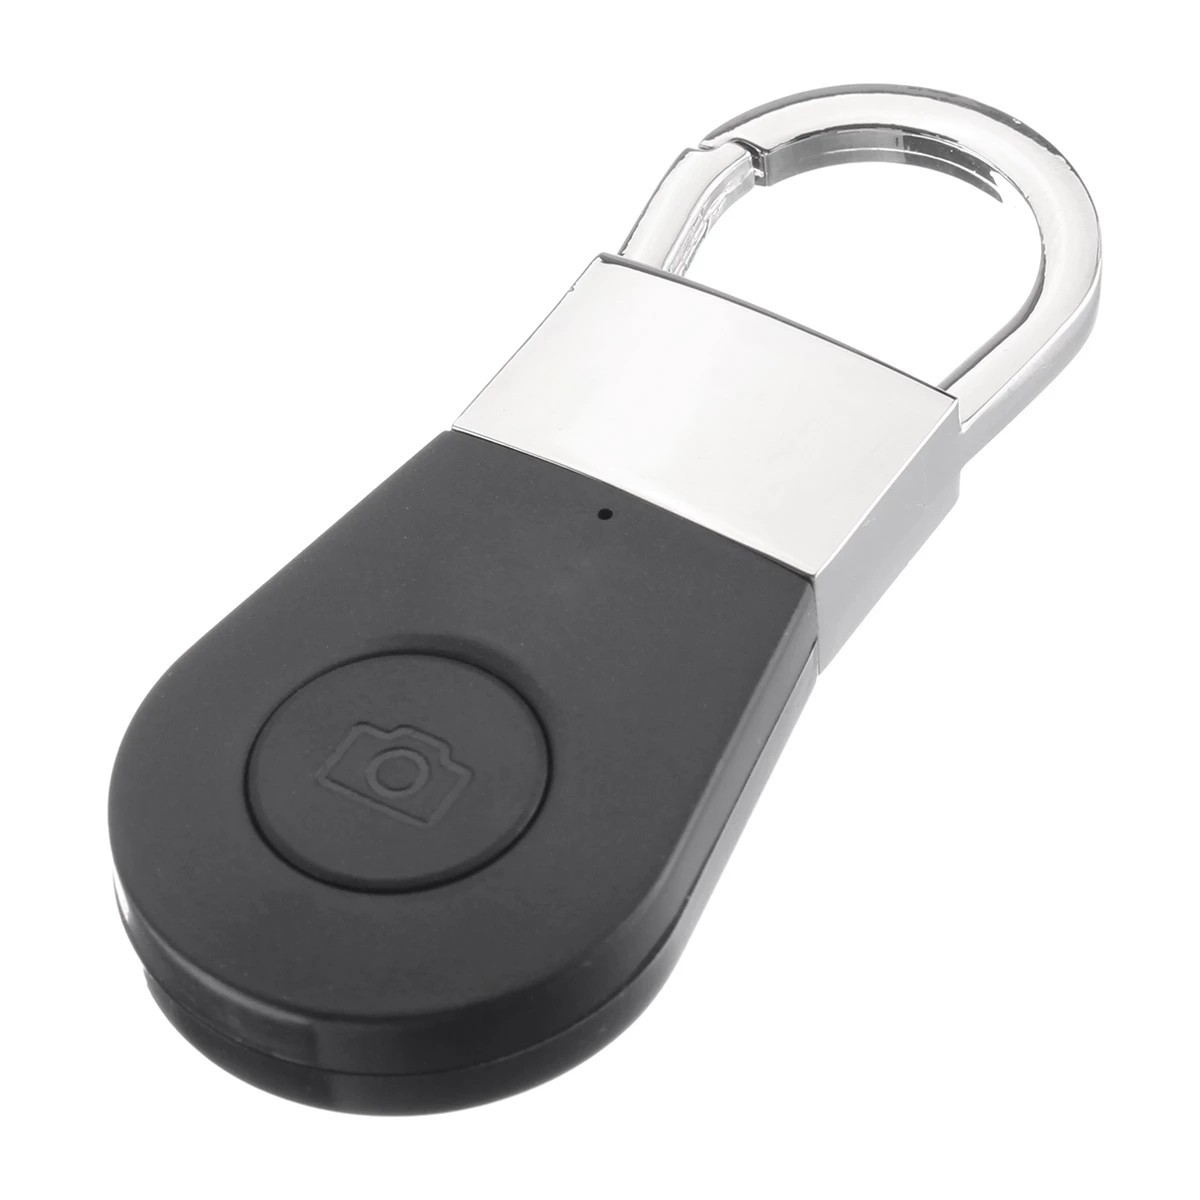 Key finder - chercheur bluetooth pour clés, téléphone portable, etc.